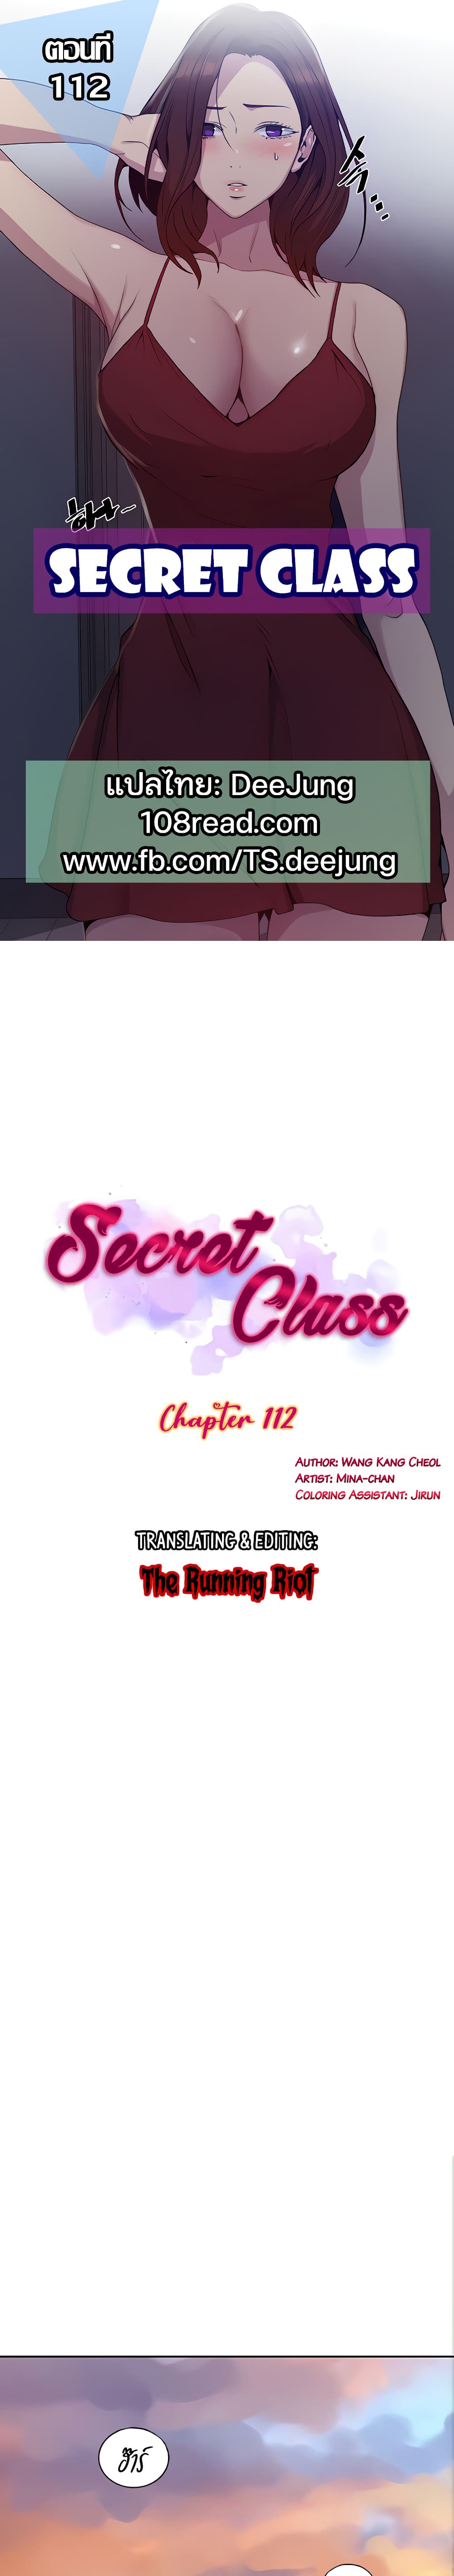 Secret Class112 (1)